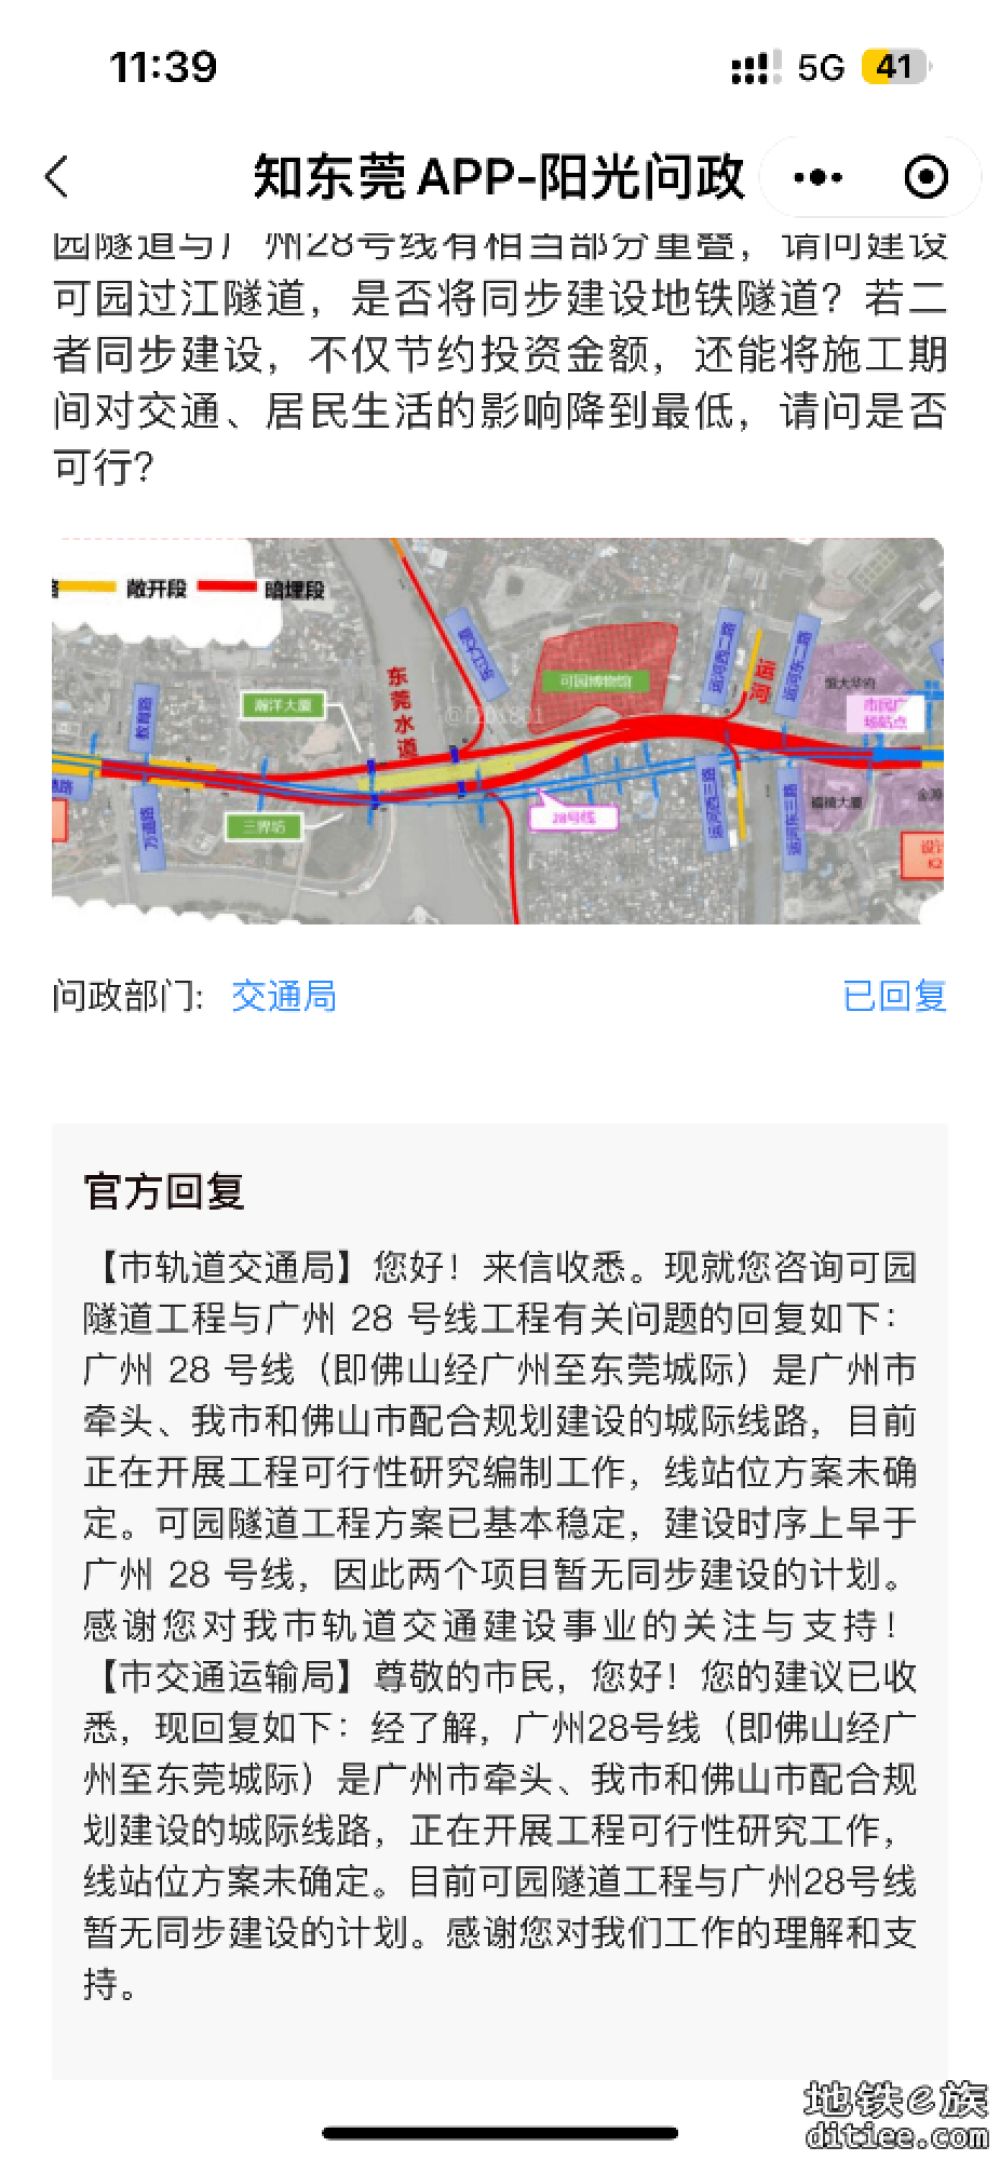 可园隧道工程与广州28号线暂无同步建设的计划。